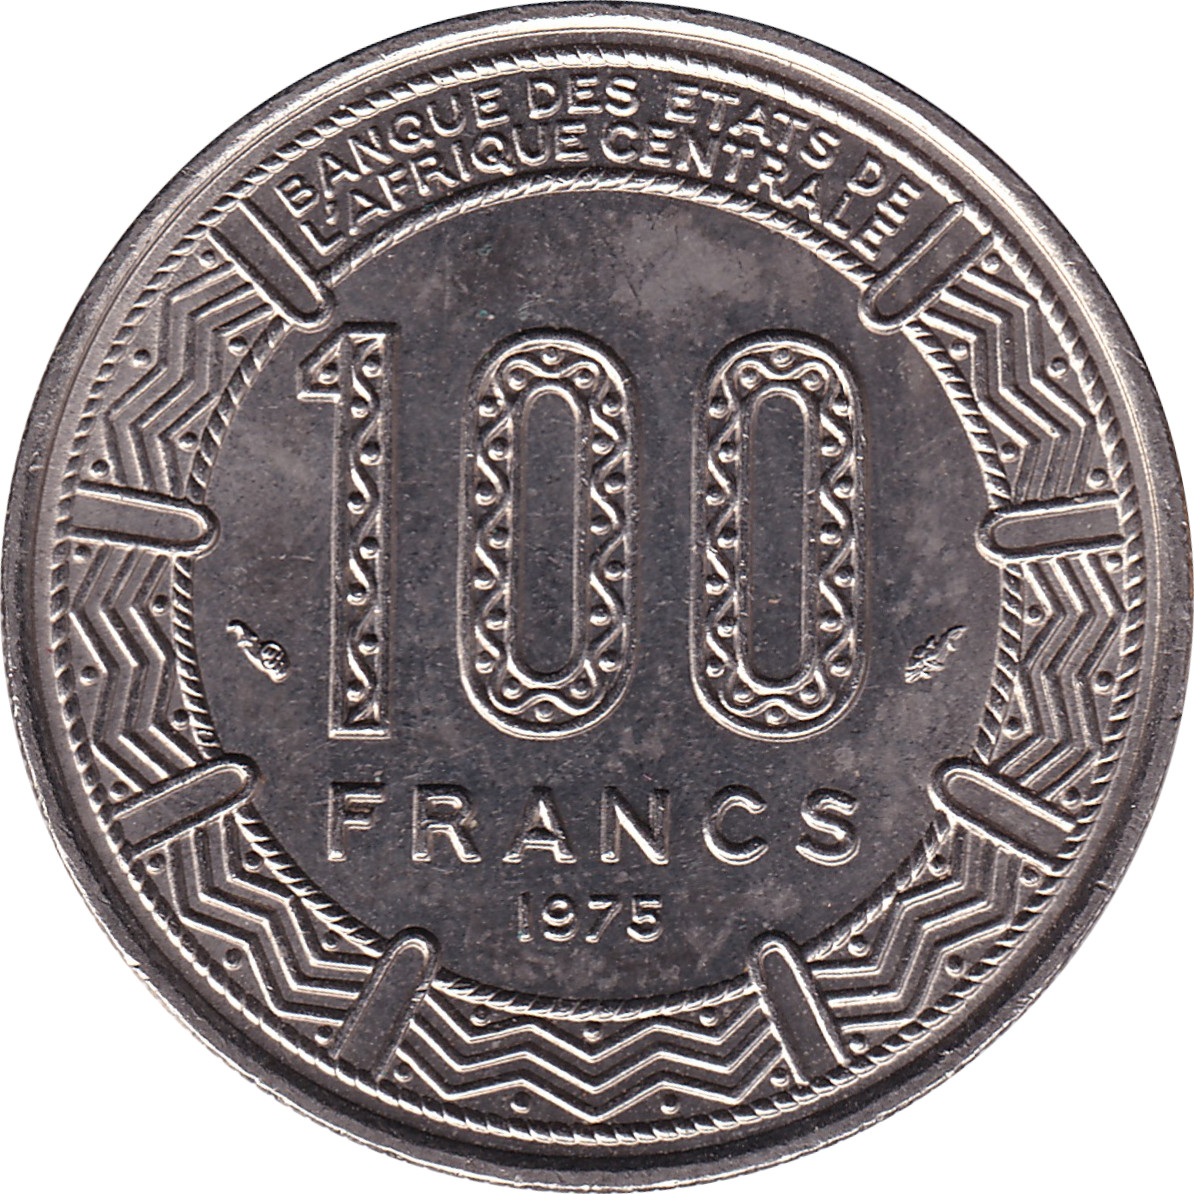 100 francs - Banque des États